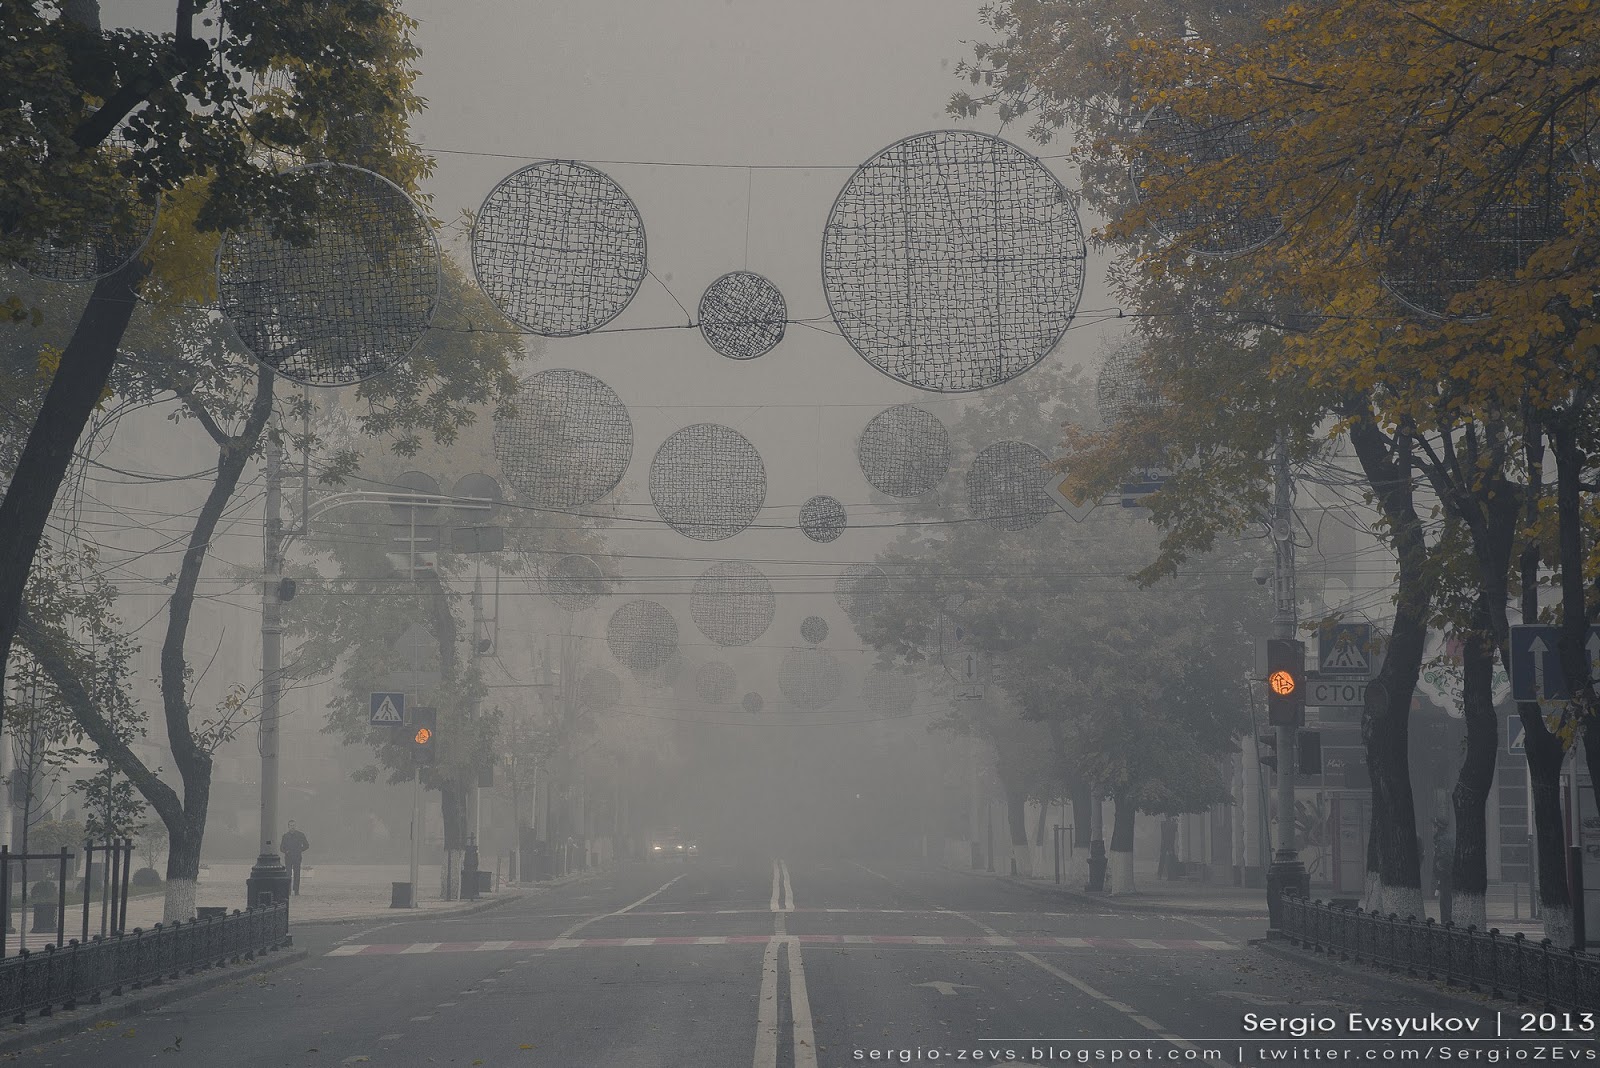 Fog in Krasnodar